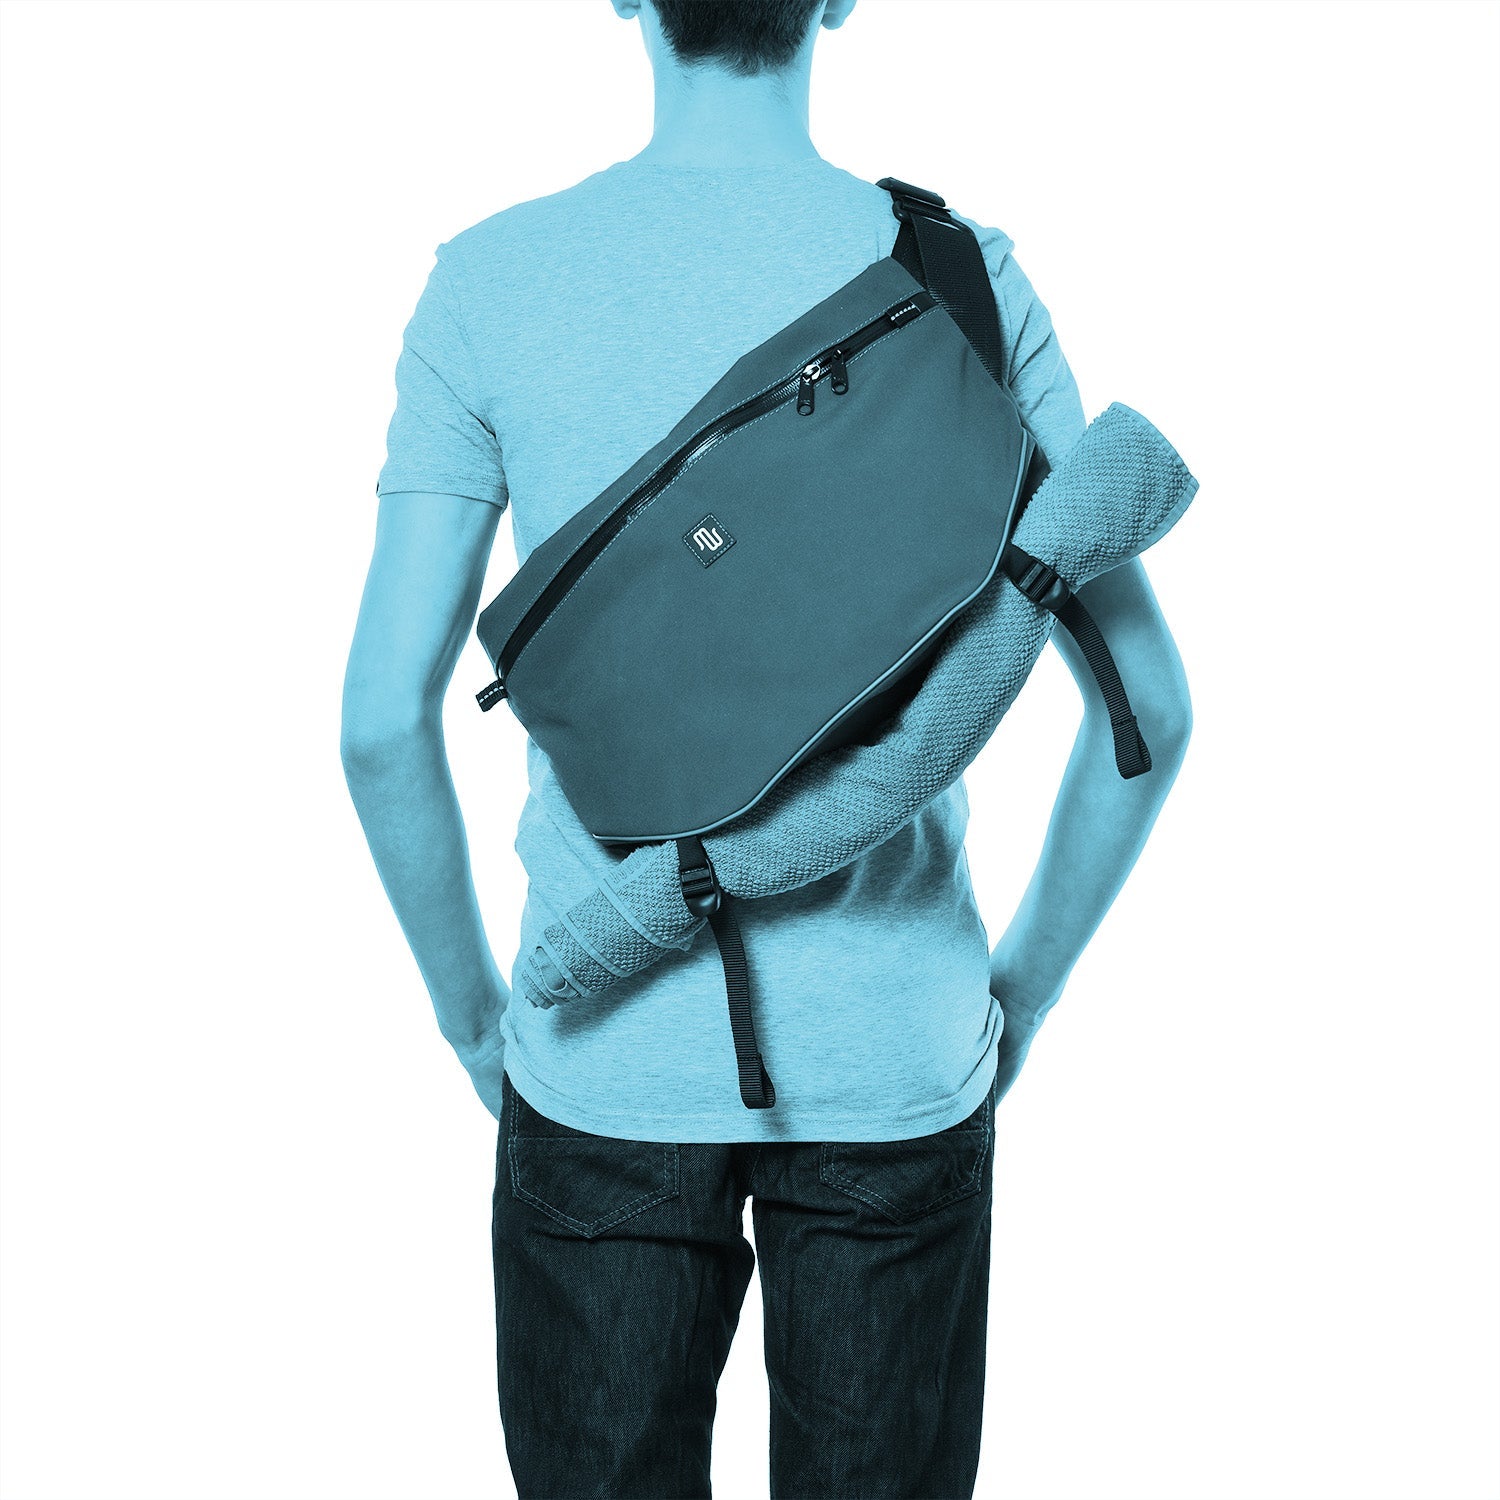 BOB No. 022 - Shoulder bag - medencebag